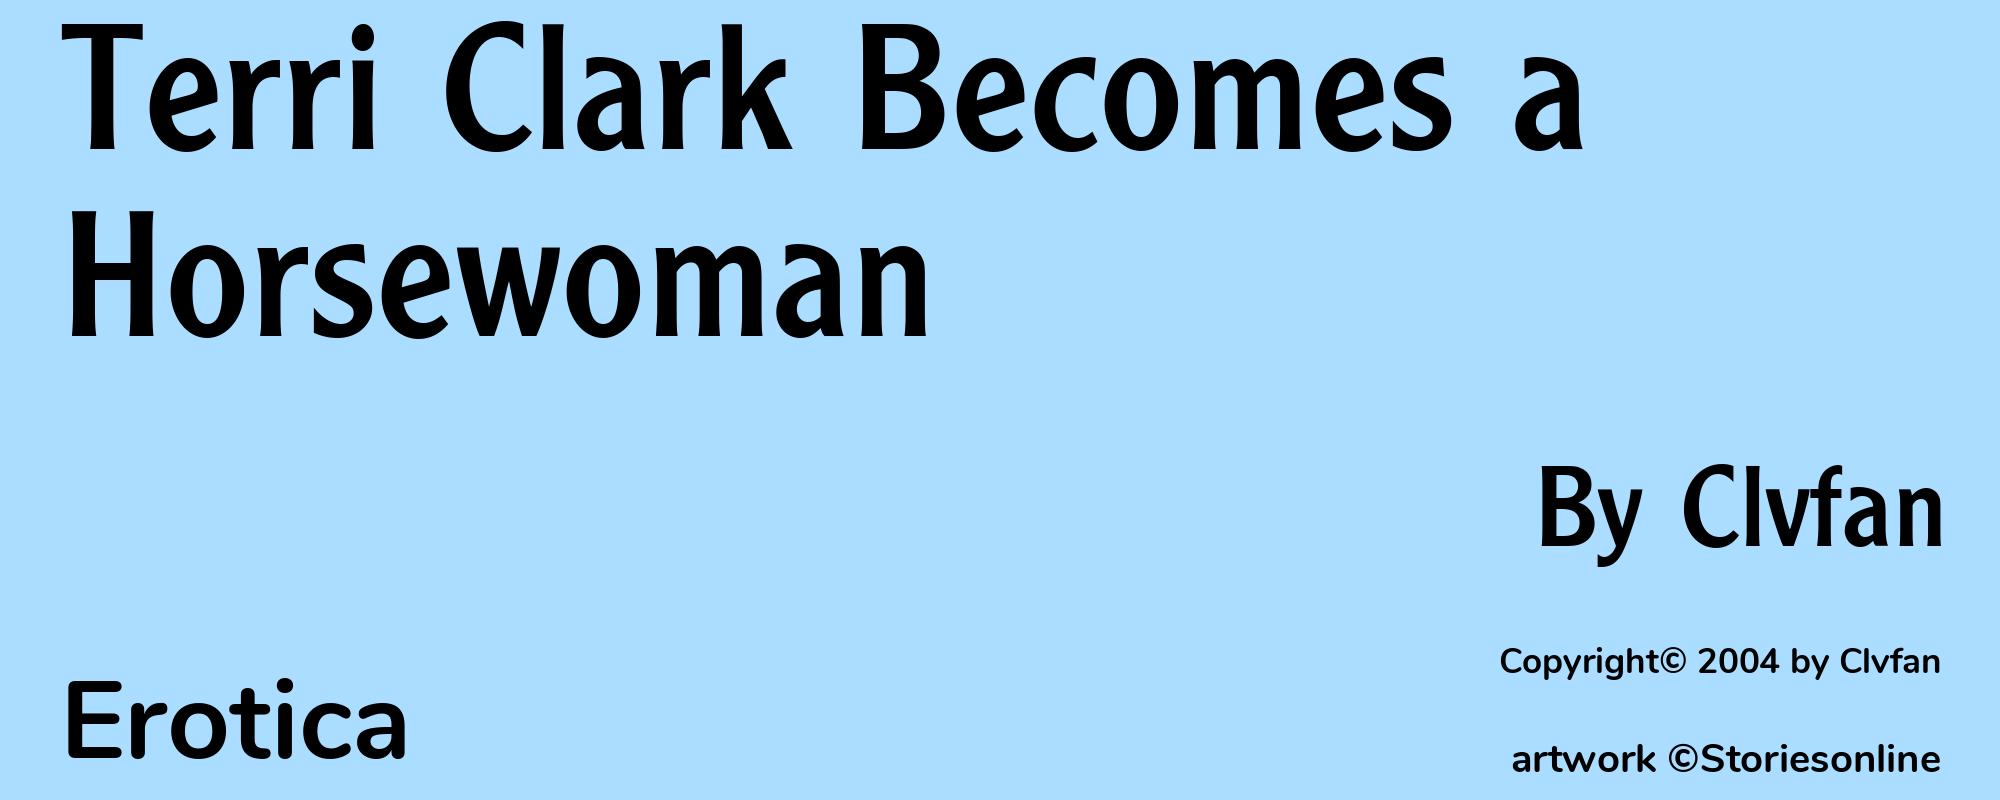 Terri Clark Becomes a Horsewoman - Cover